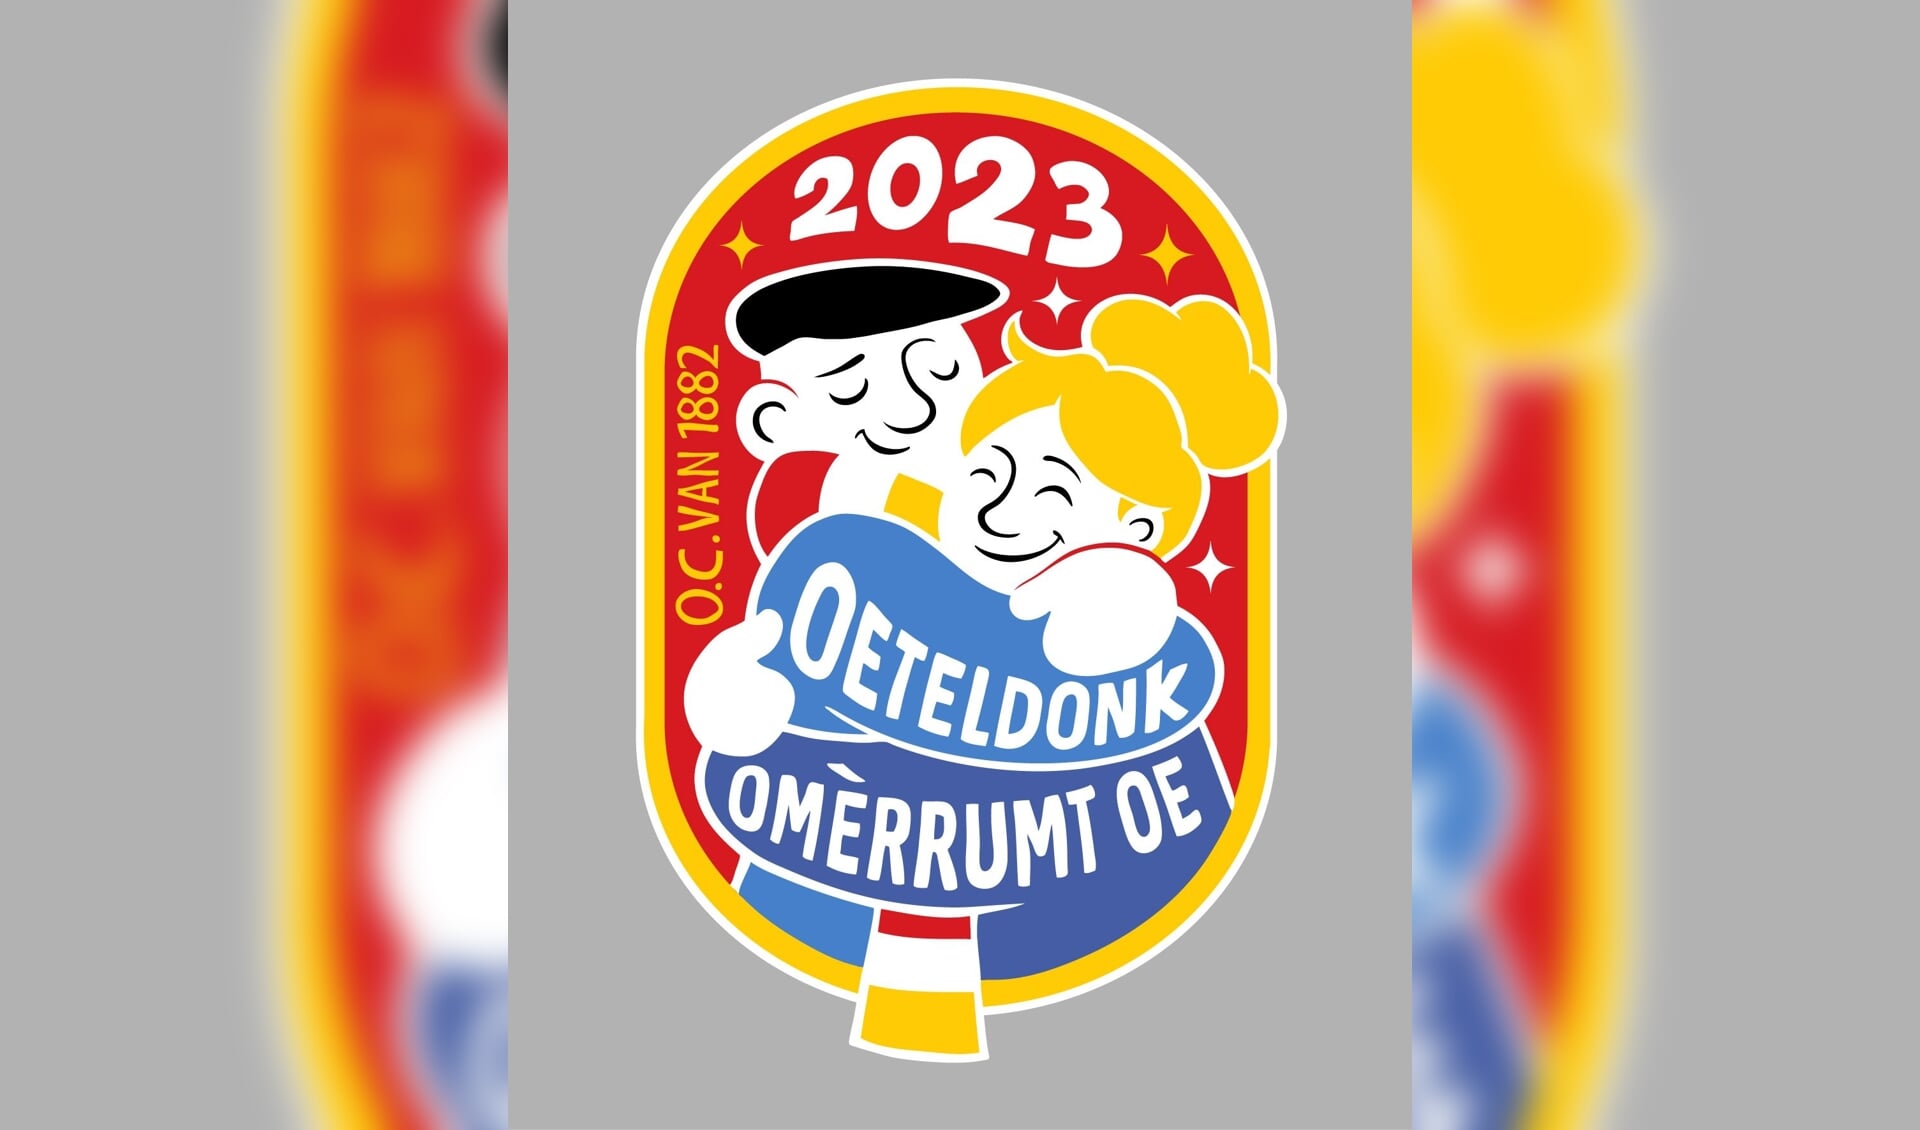 Het nostalgisch getekende embleem van Joeri geeft het motto ‘Oeteldonk omèrrumt oe’ goed weer. 